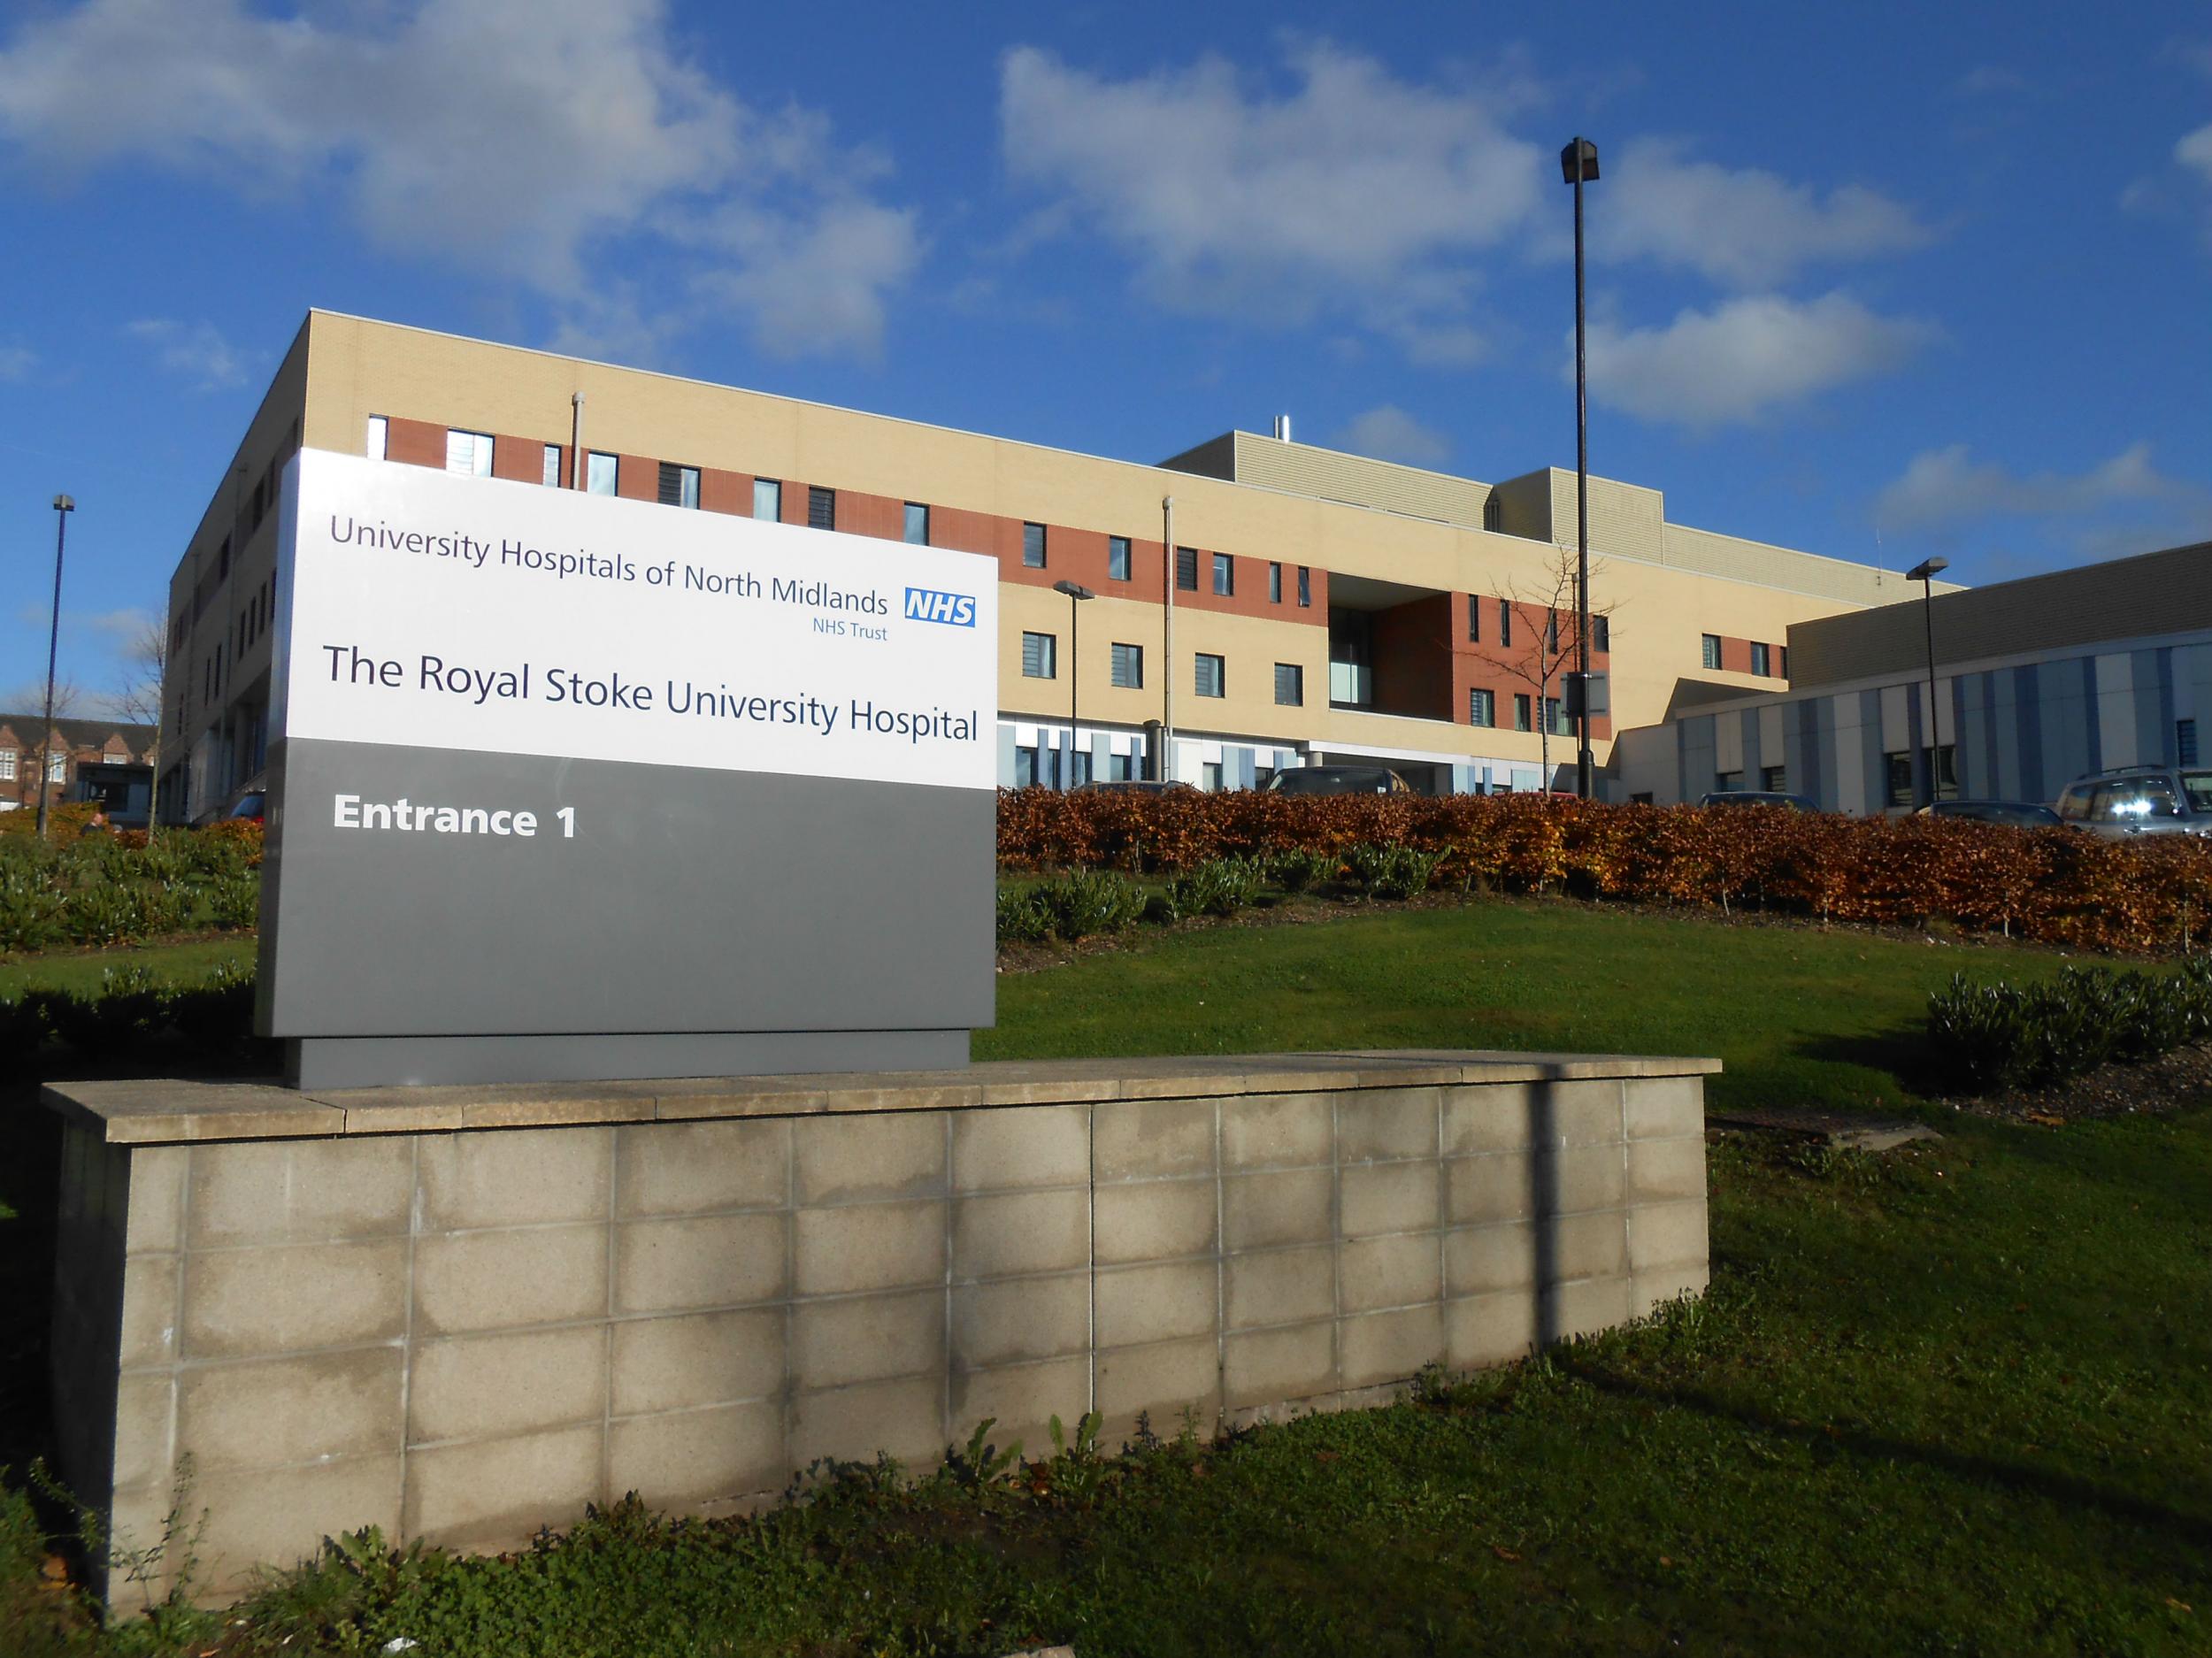 Bronwyn was pronounced dead at Riyal Stoke University Hospital on Saturday